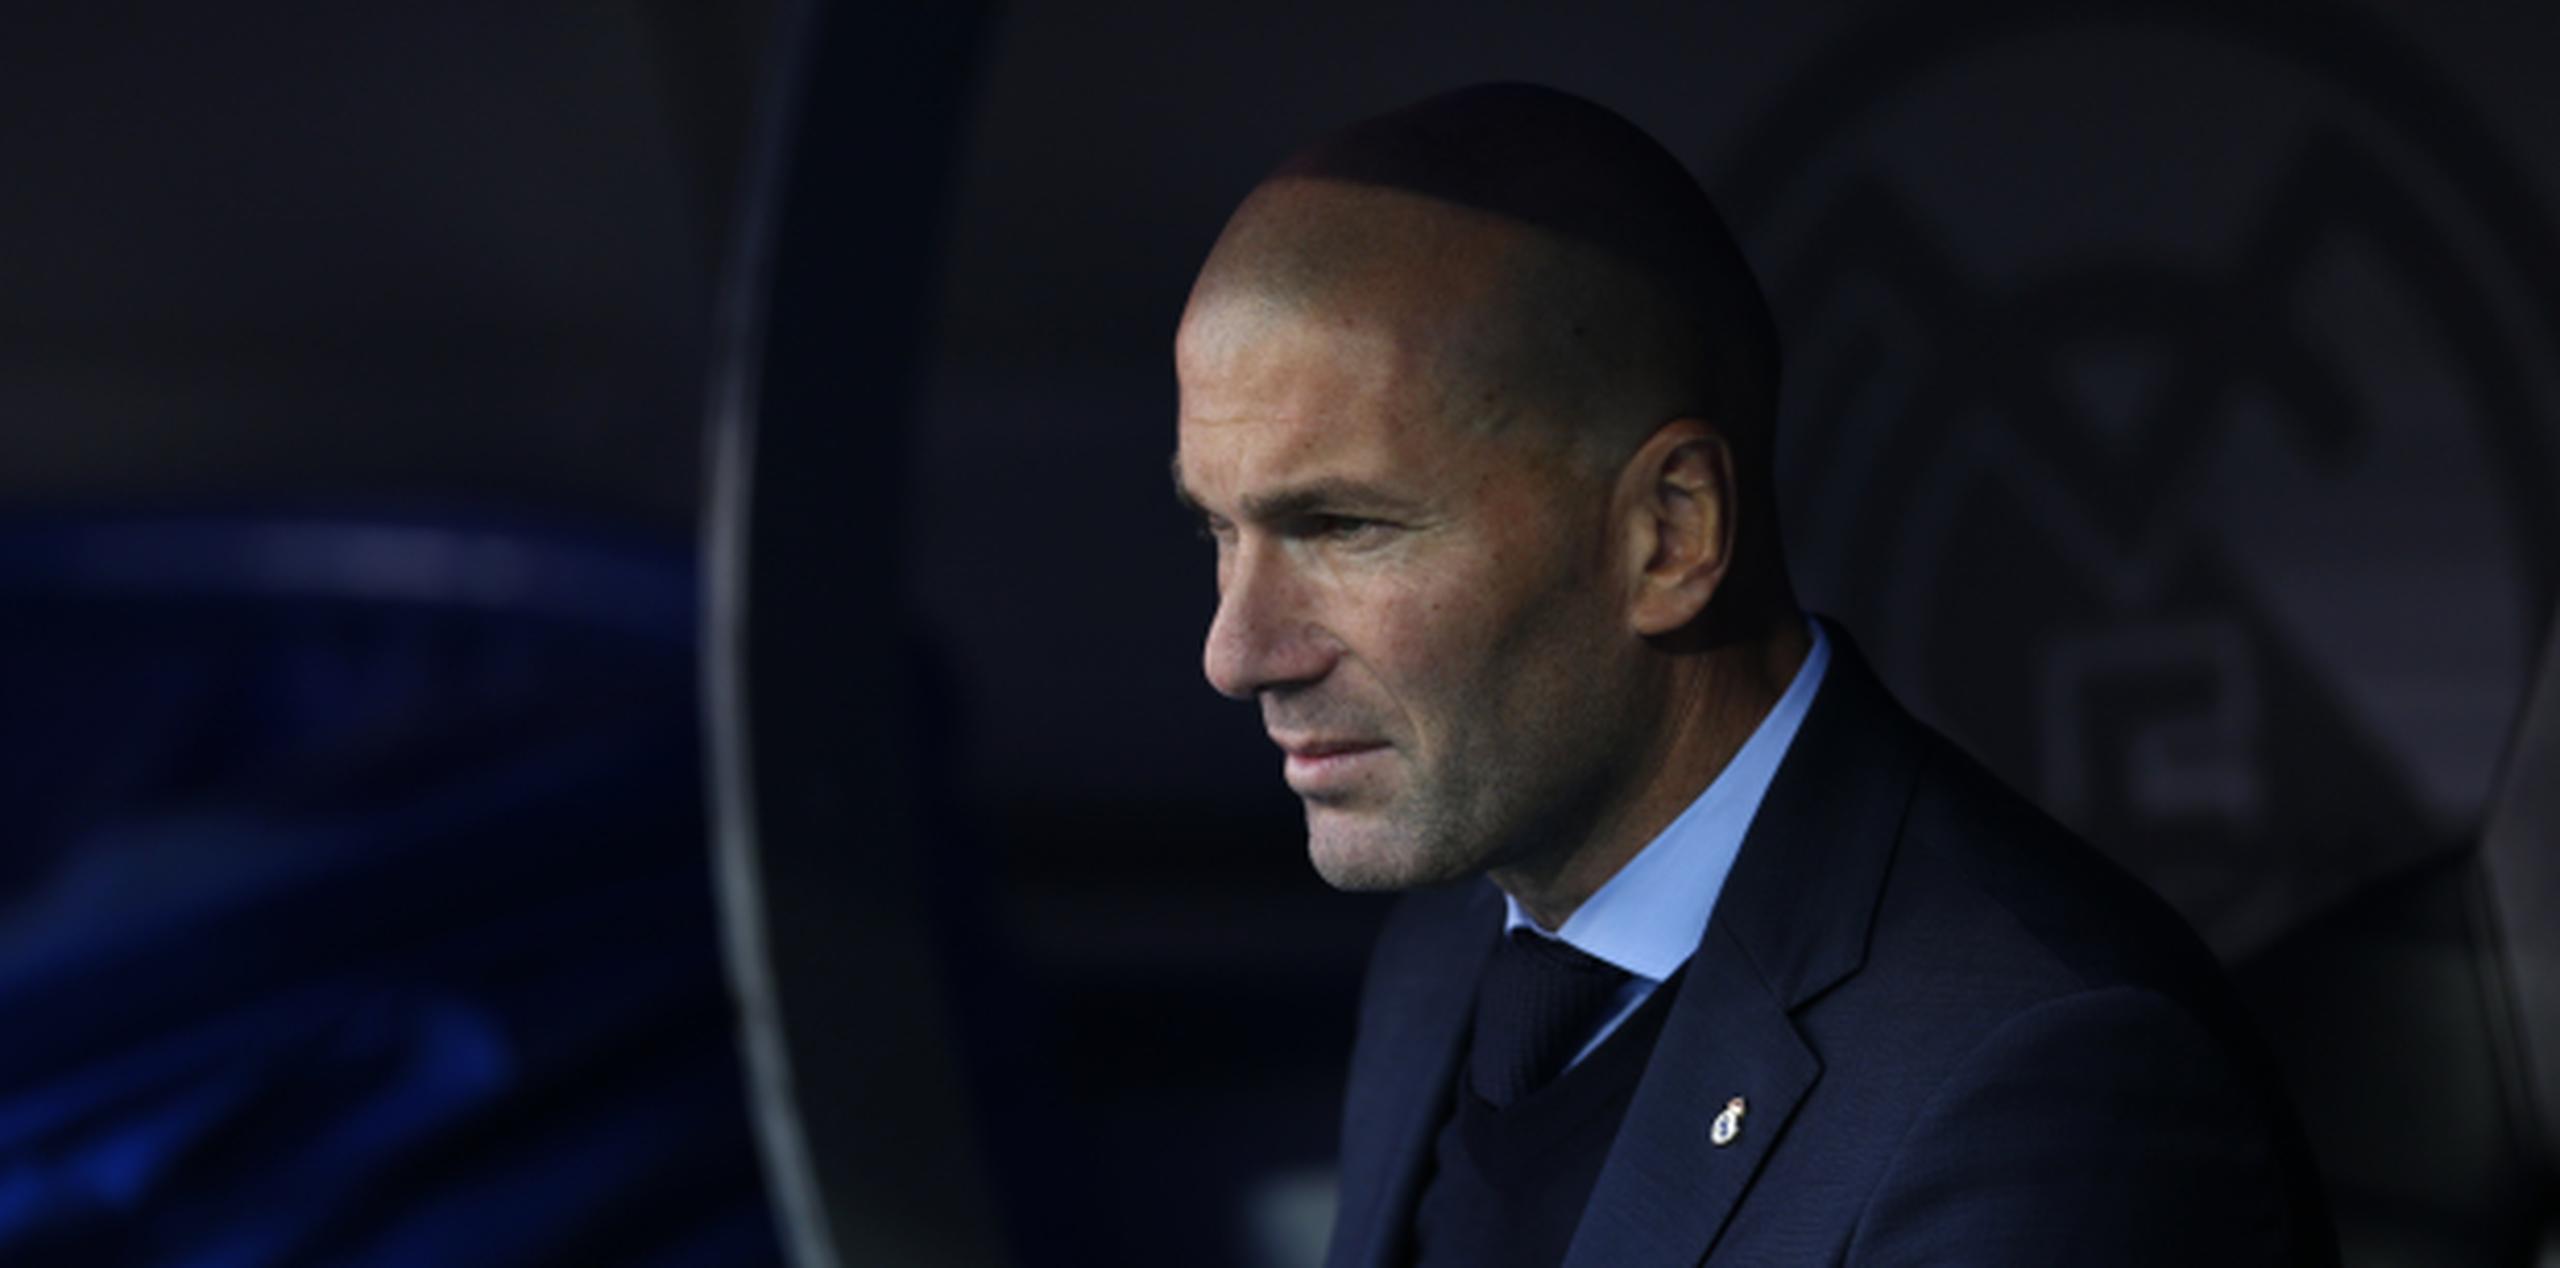 El técnico de Real Madrid, Zinedine Zidane, aparece sentado en la banca antes de un partido contra Barcelona por la liga española el sábado, 23 de diciembre de 2017. (Archivo AP)